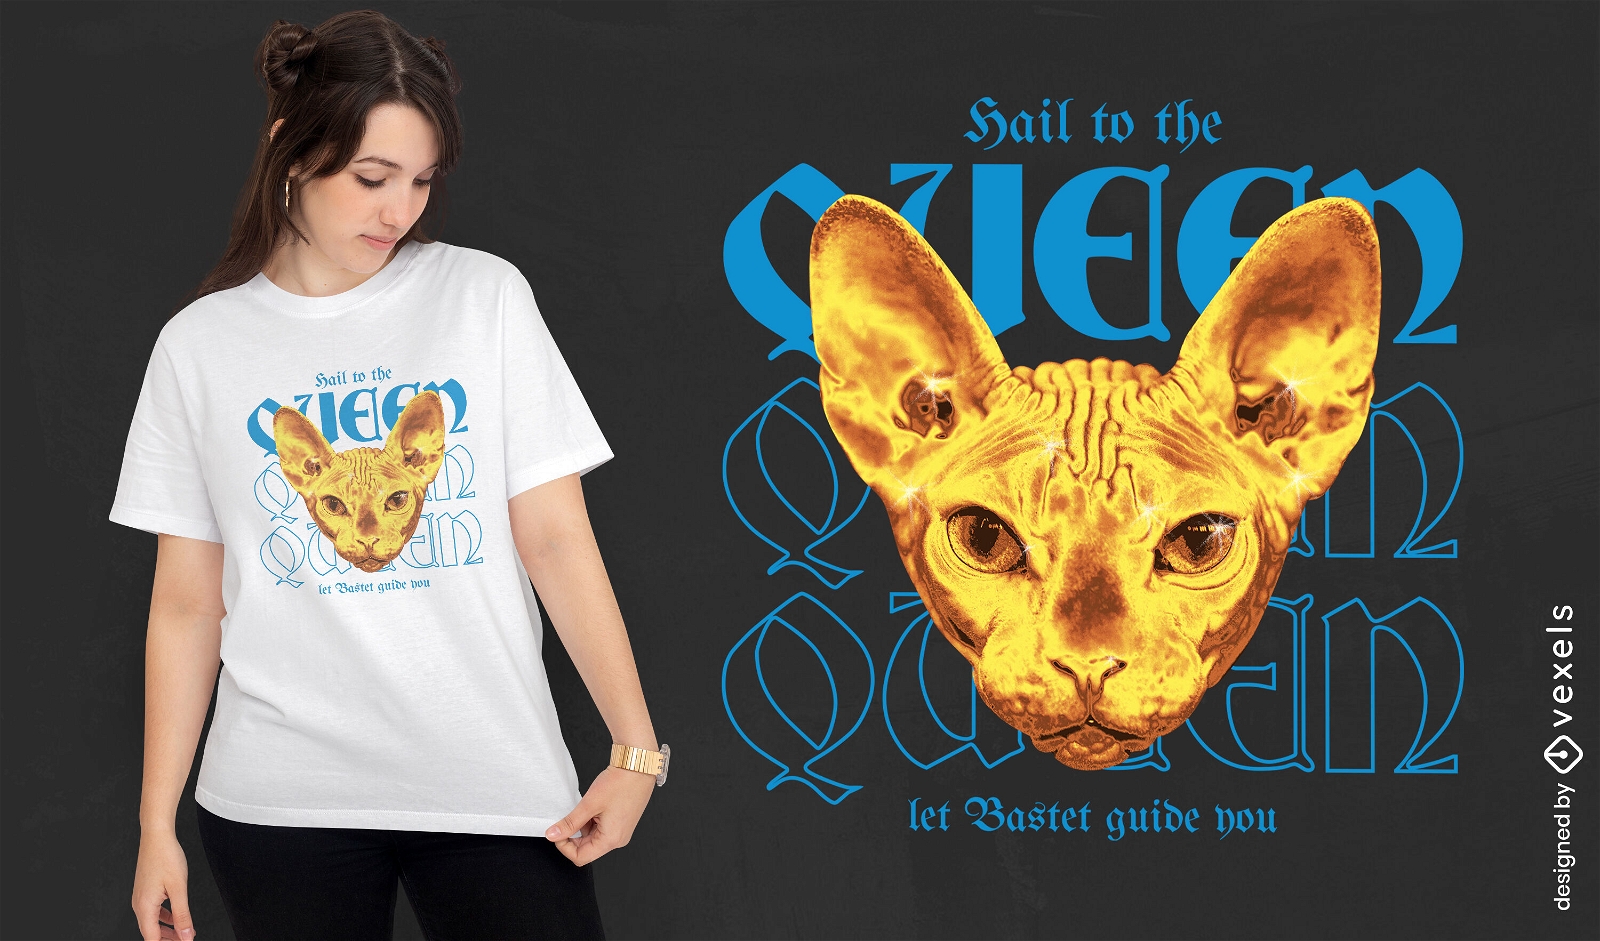 Hail to queen Bastet t-shirt design